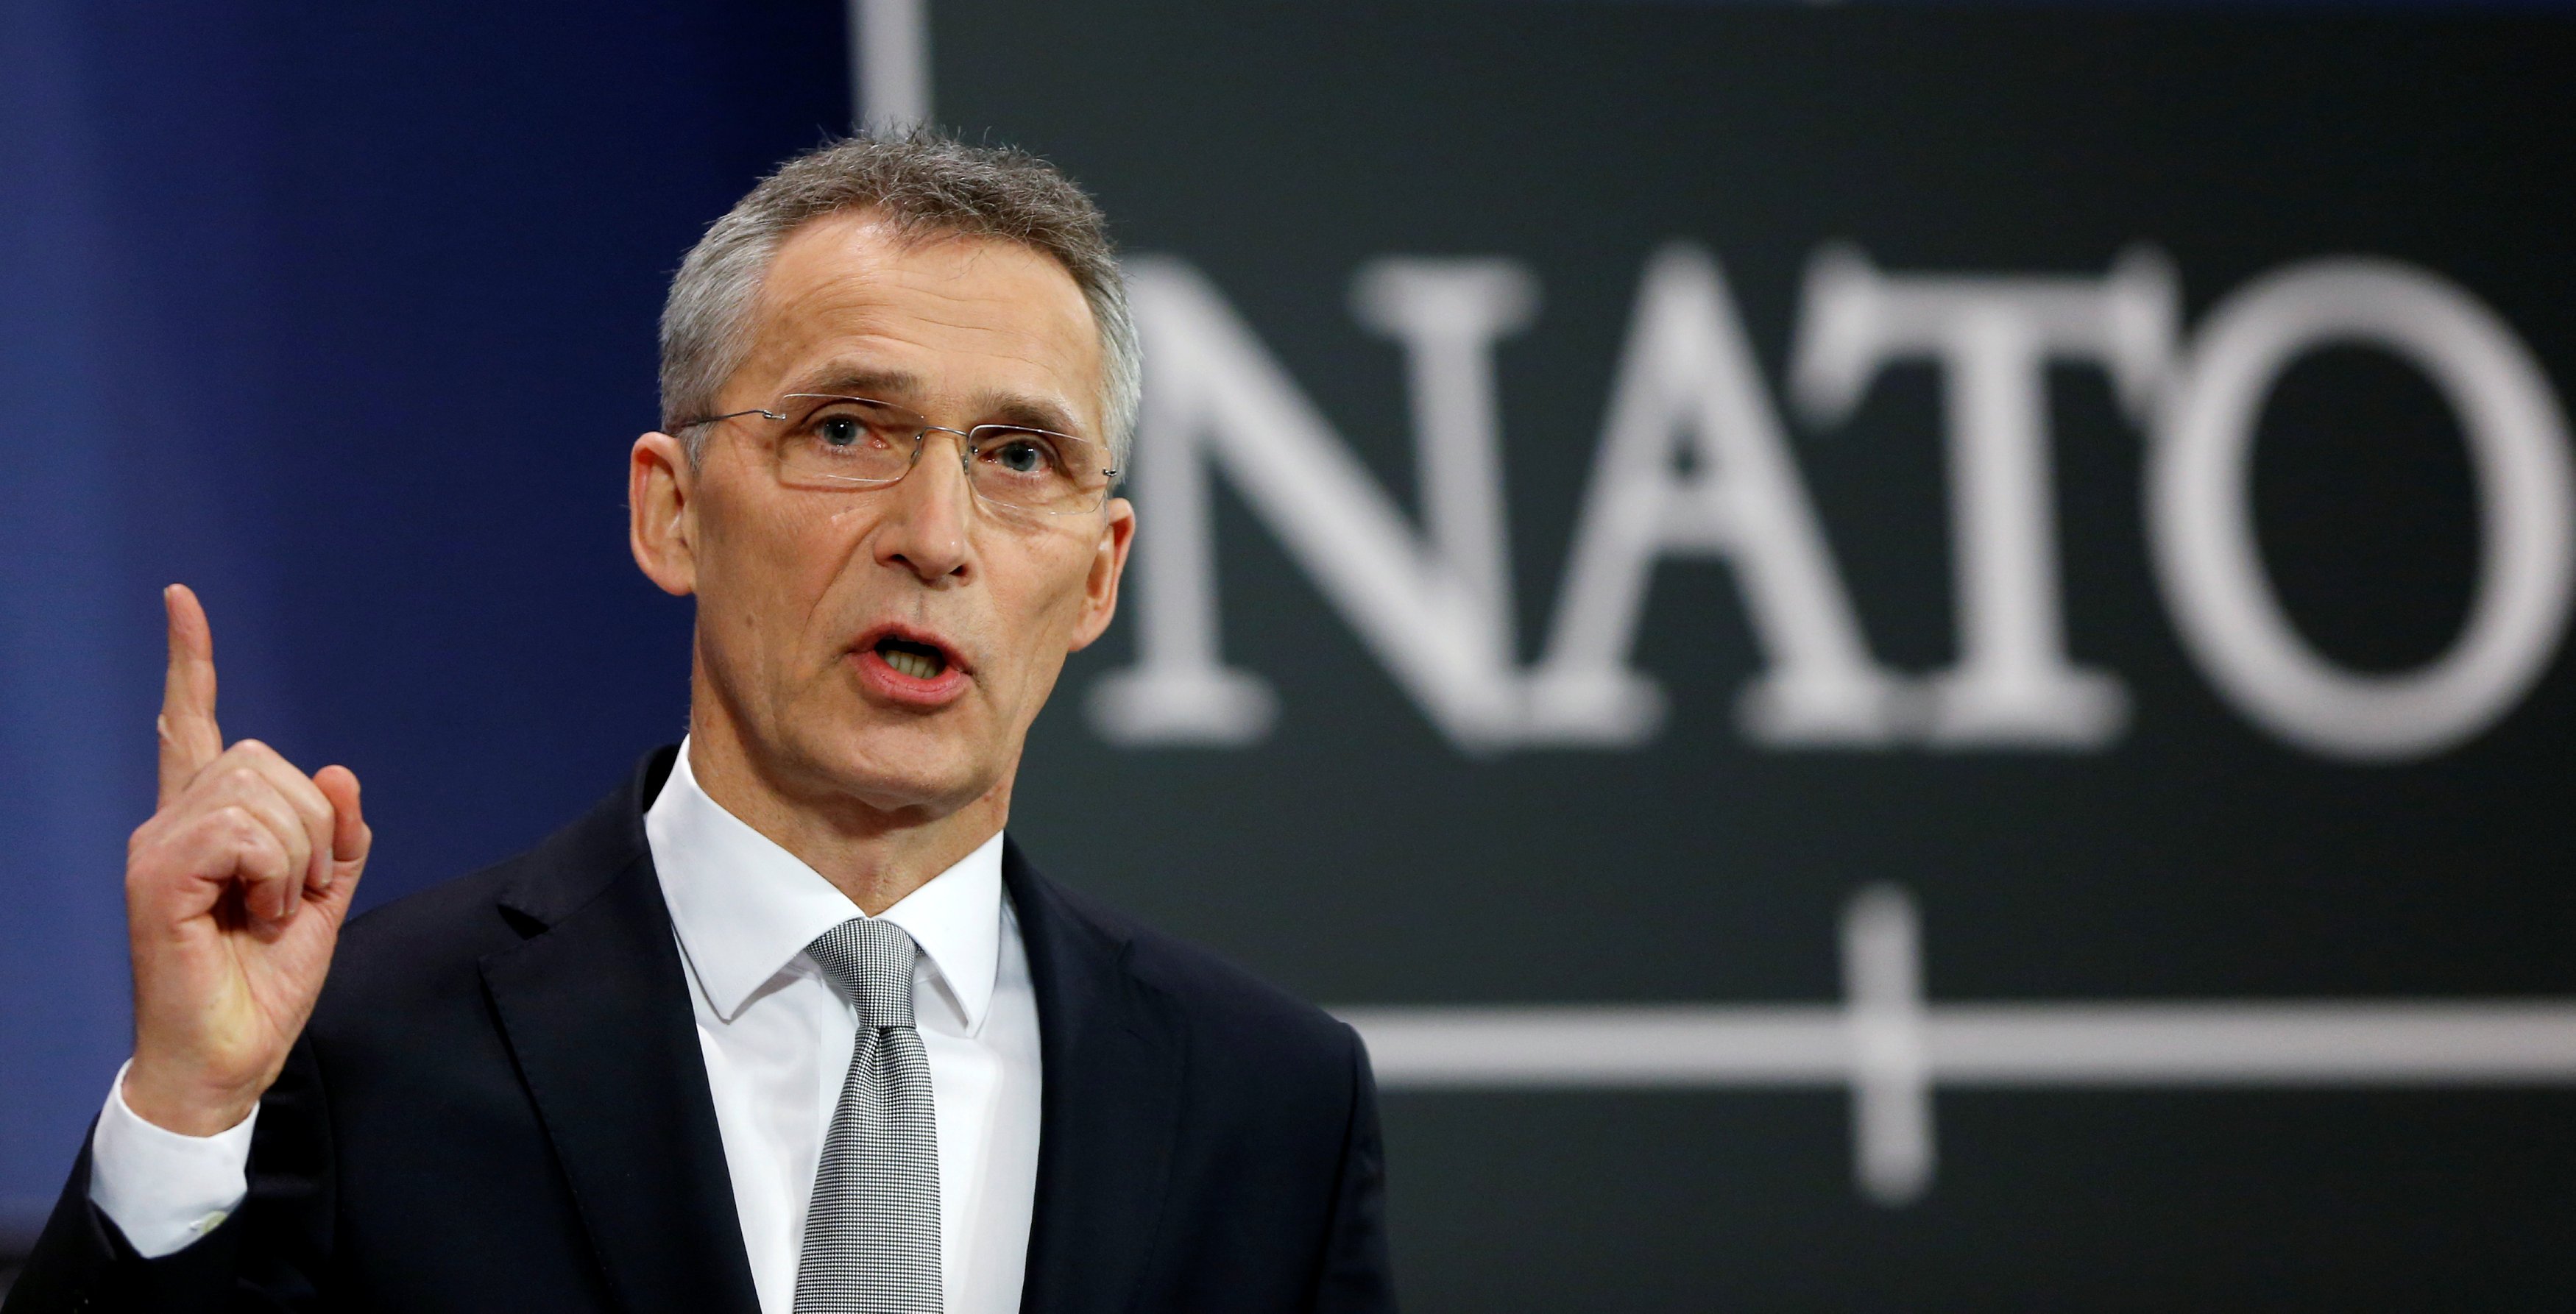 НАТО начеку: Столтенберг отреагировал на действия РФ у границ Украины